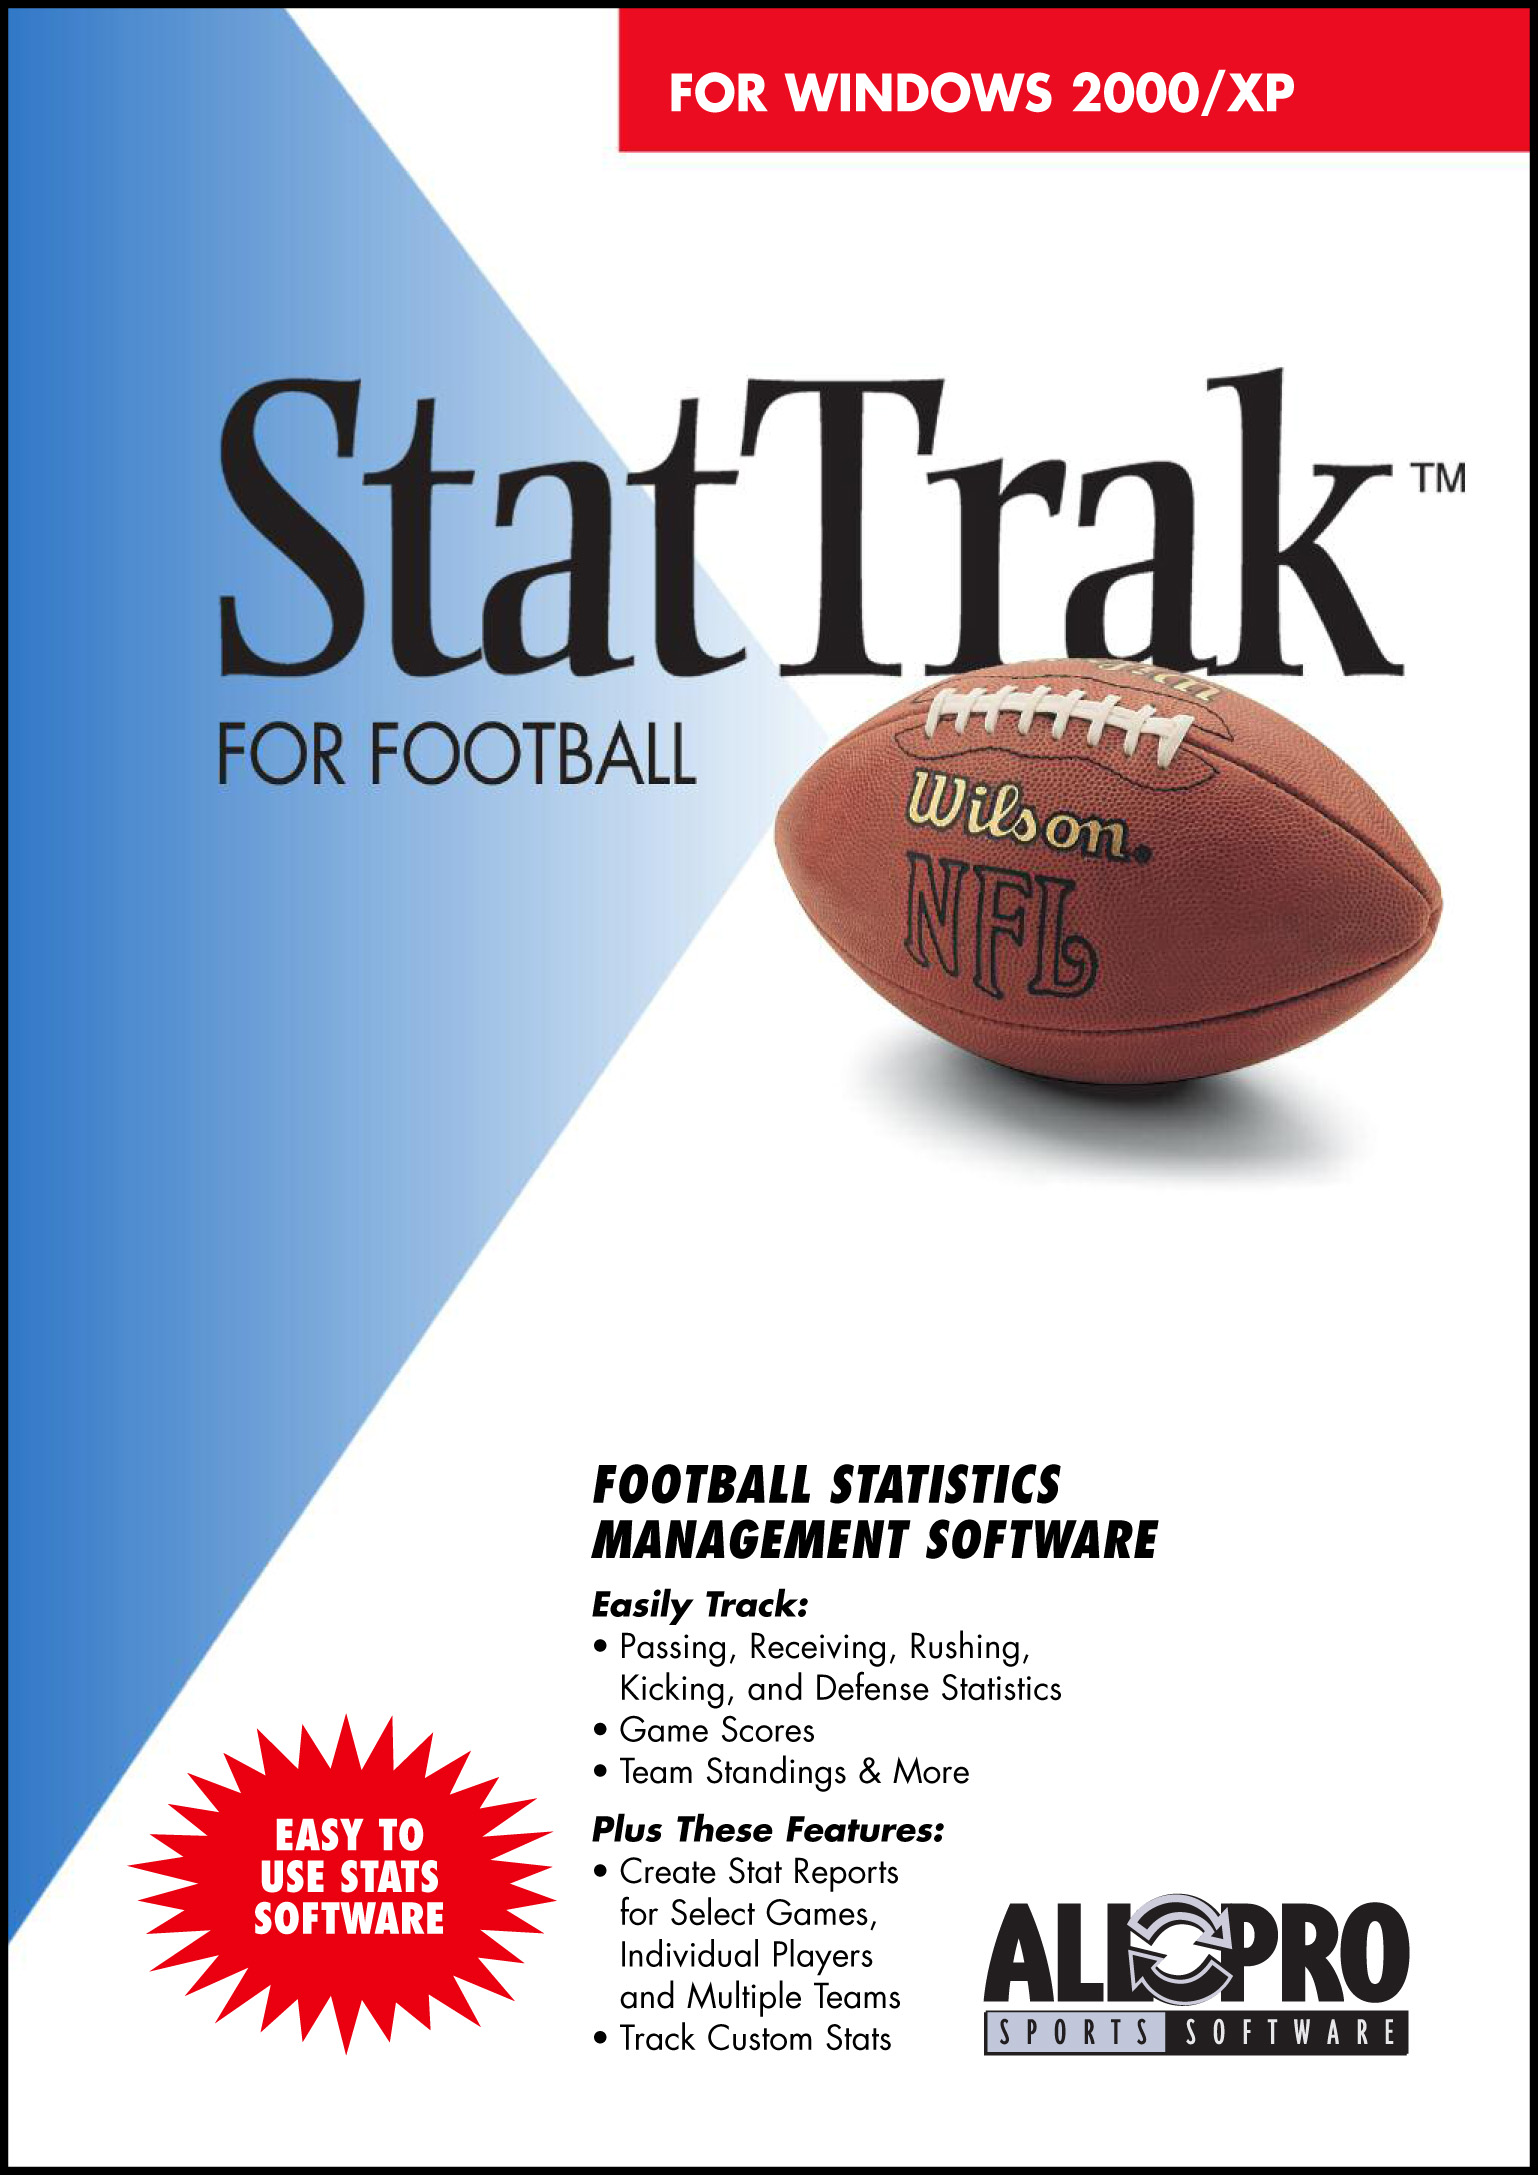 StatTrak for Football